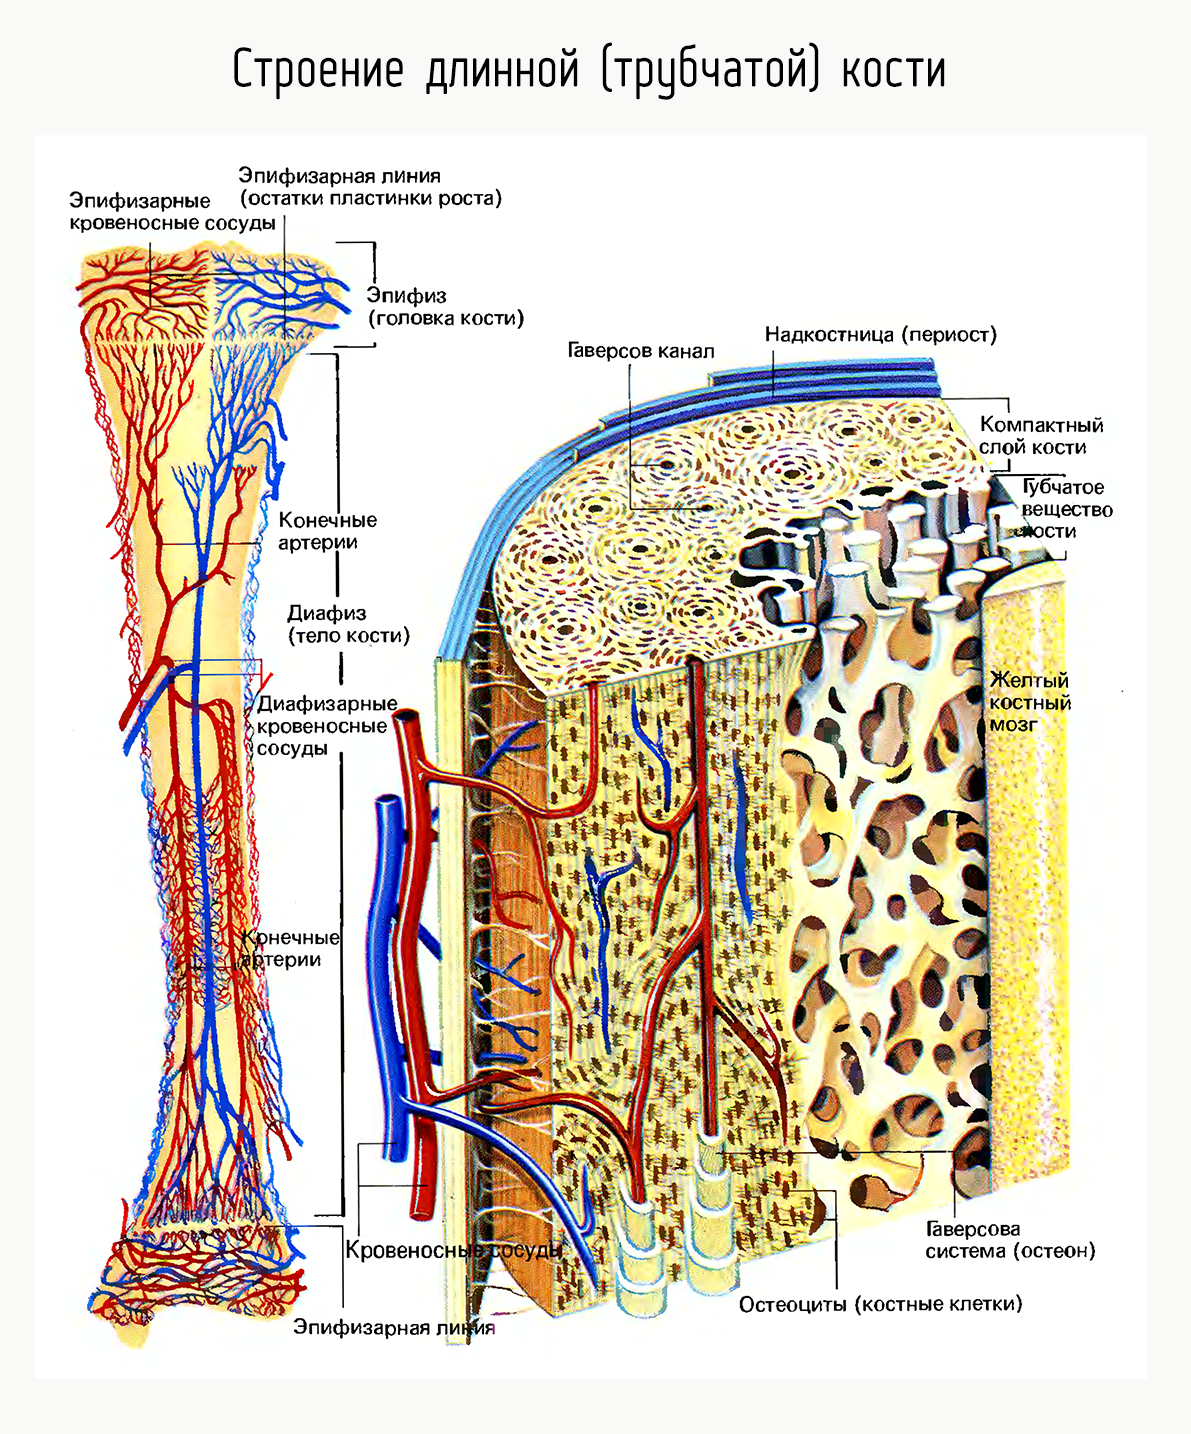 Кровообращение костей. Строение длинной трубчатой кости. Трубчатая кость строение анатомия. Внутреннее строение кости состав. Внутреннее строение трубчатых костей.